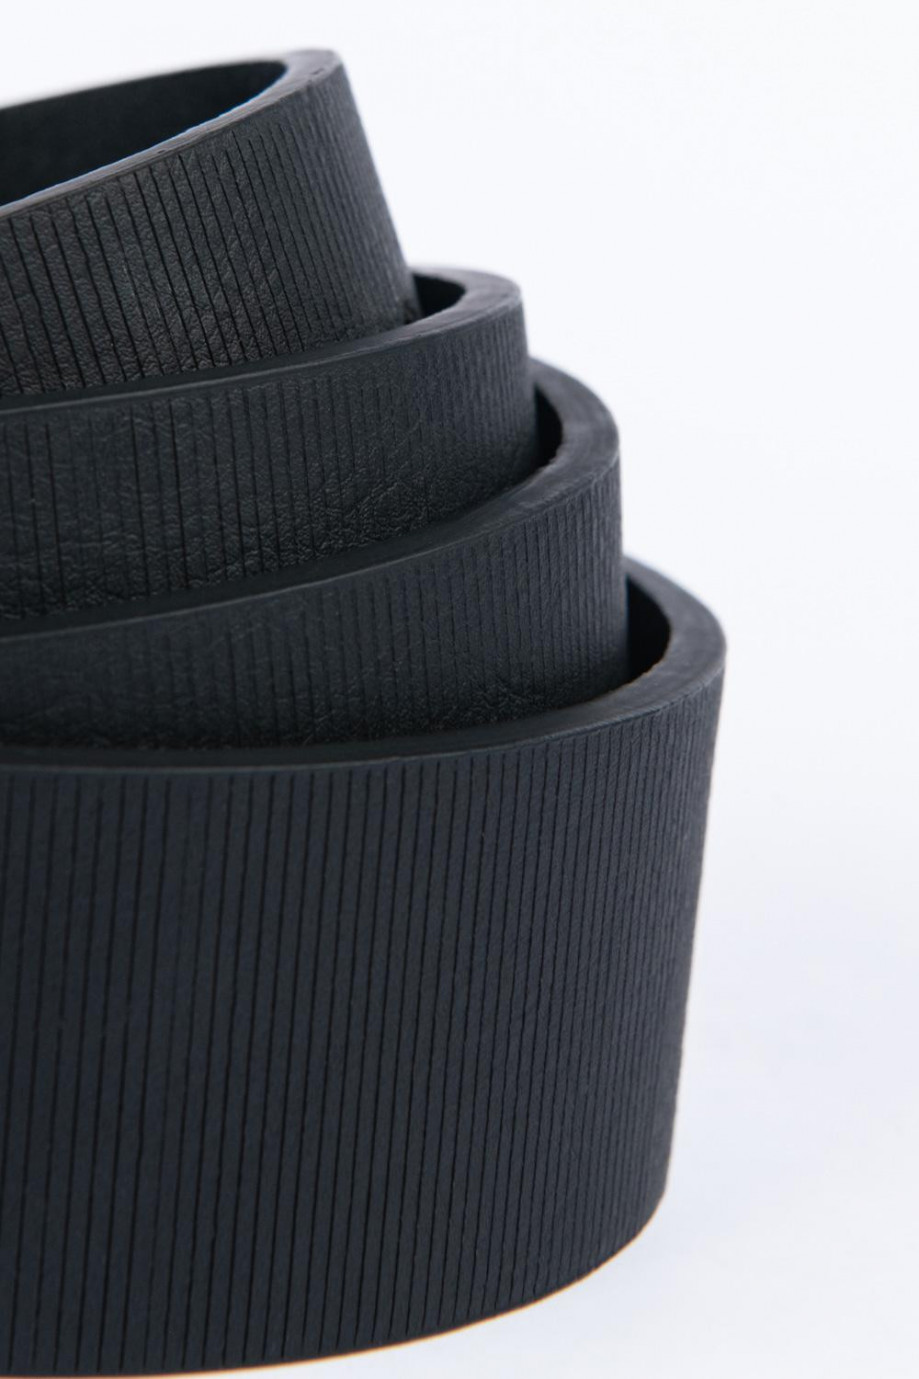 Cinturón sintético negro con hebilla metálica y textura de líneas